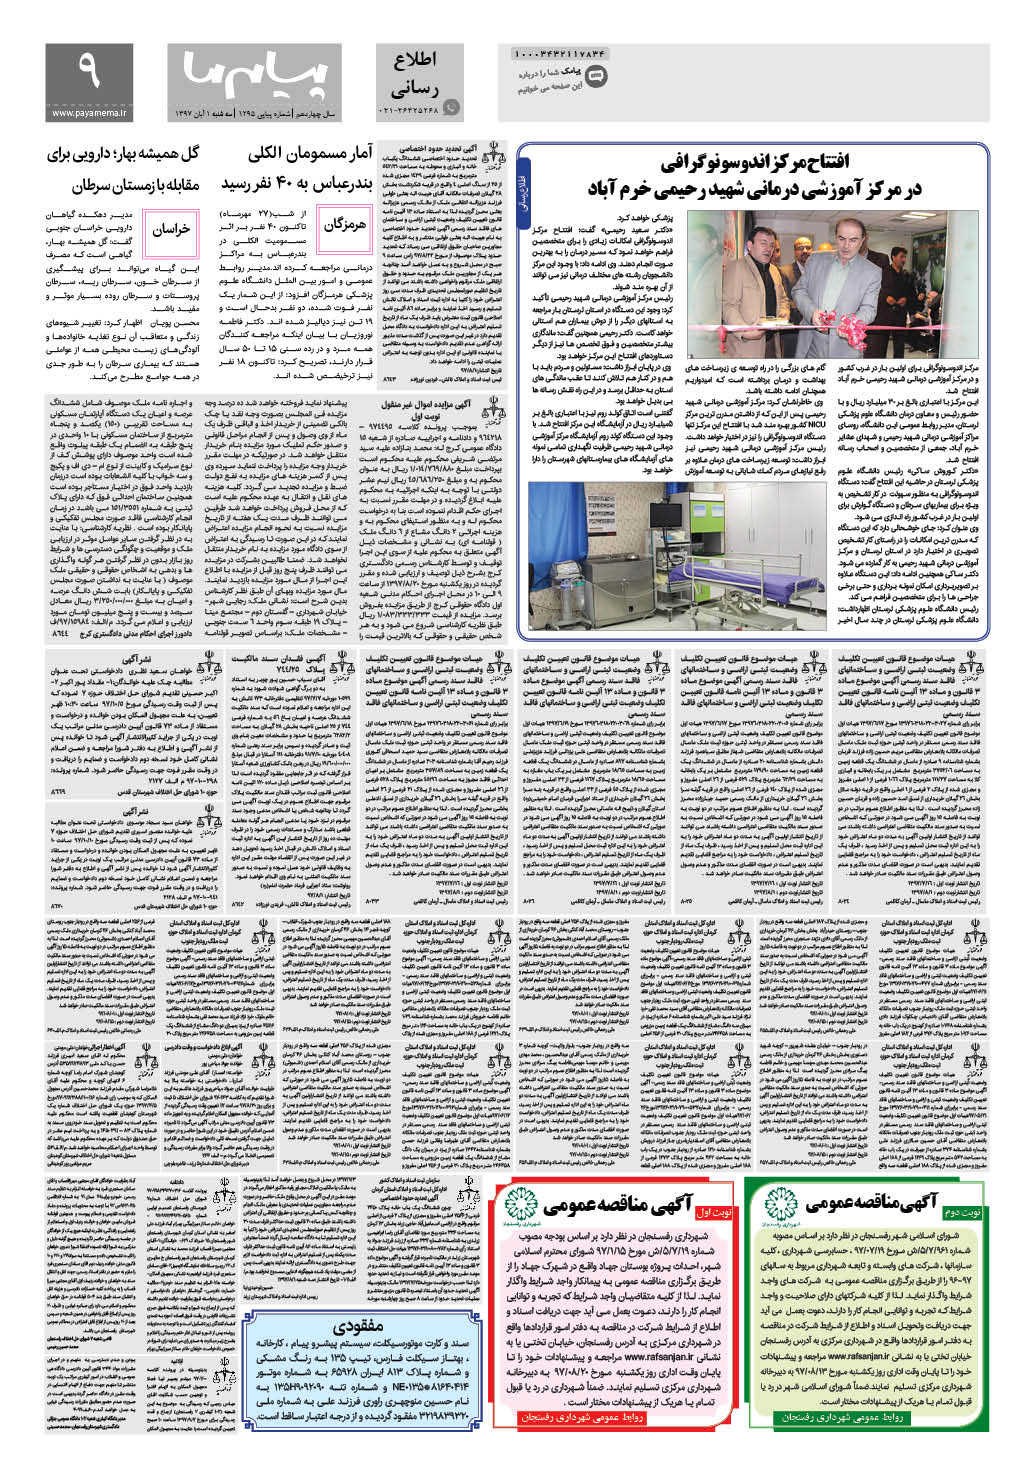 صفحه پیام ایران شماره 1295 روزنامه پیام ما